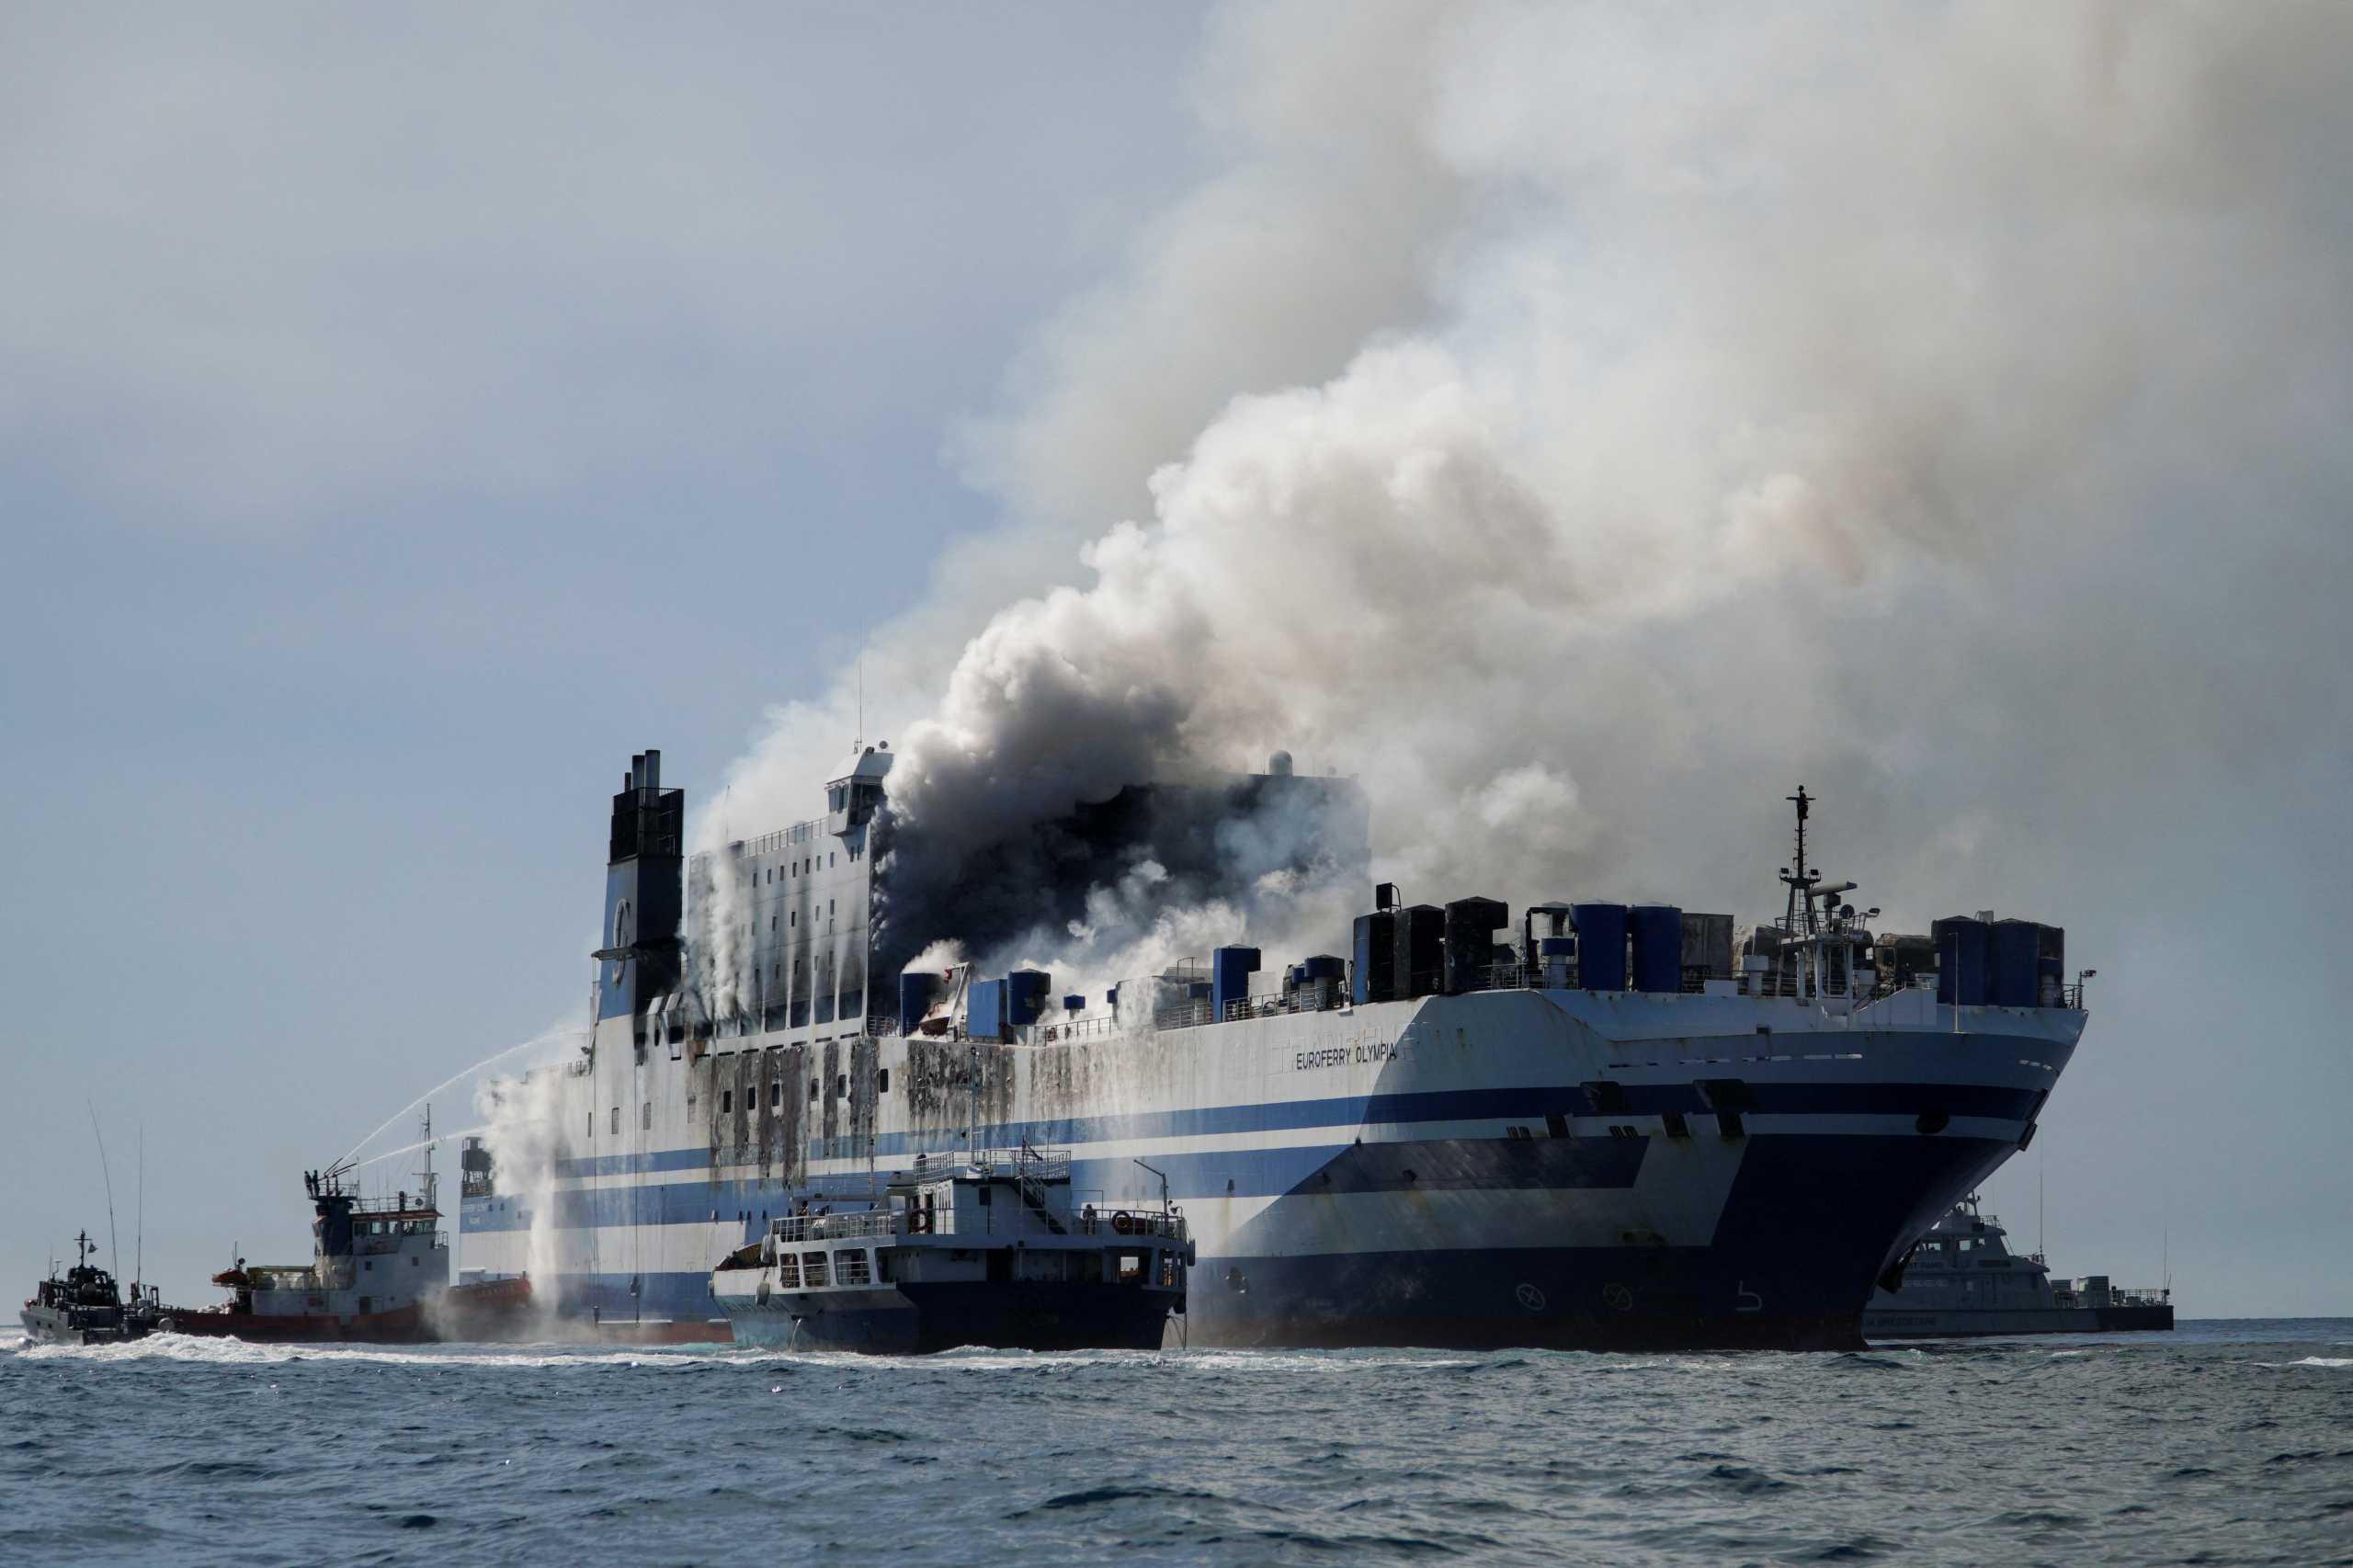 Φωτιά σε πλοίο στην Κέρκυρα: Απεγκλωβίστηκαν οι δυο άνθρωποι από το γκαράζ του Euroferry Olympia